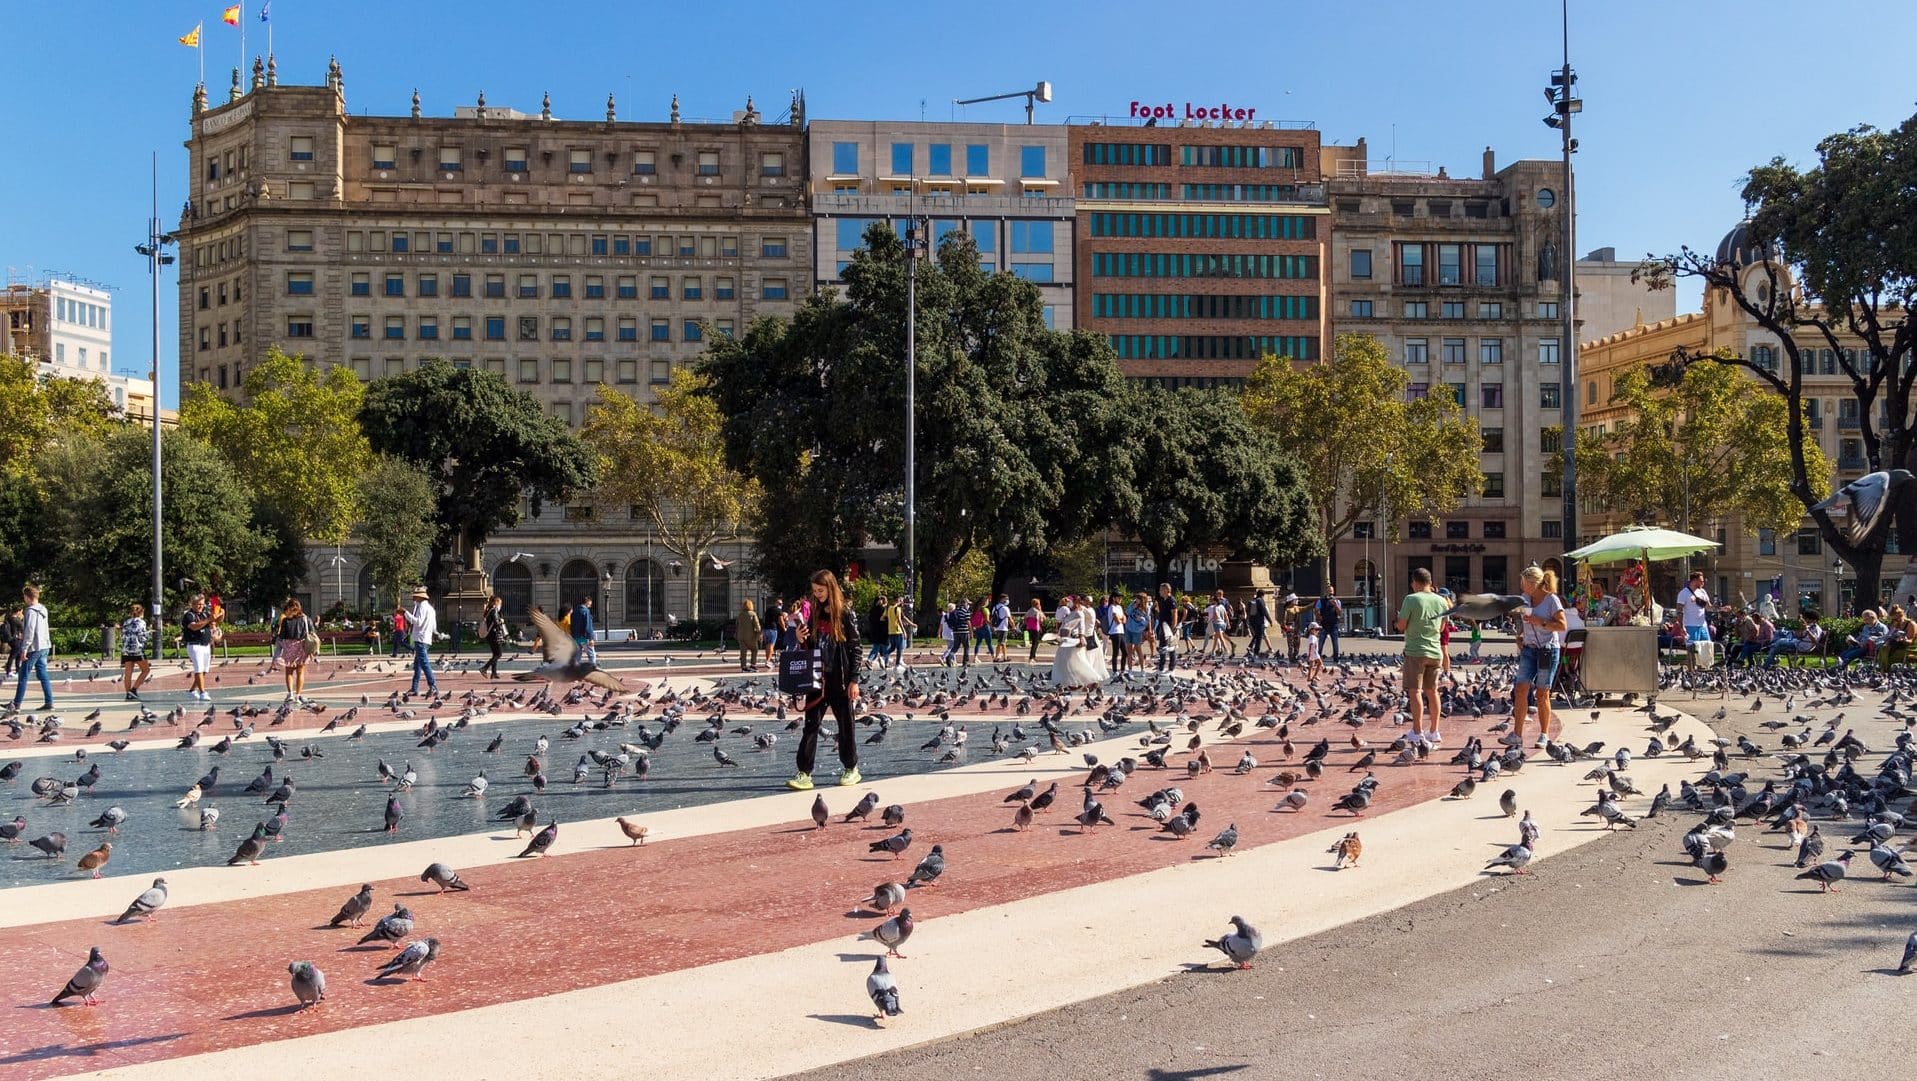 La Plaça de Catalunya es considerada el corazón de Barcelona